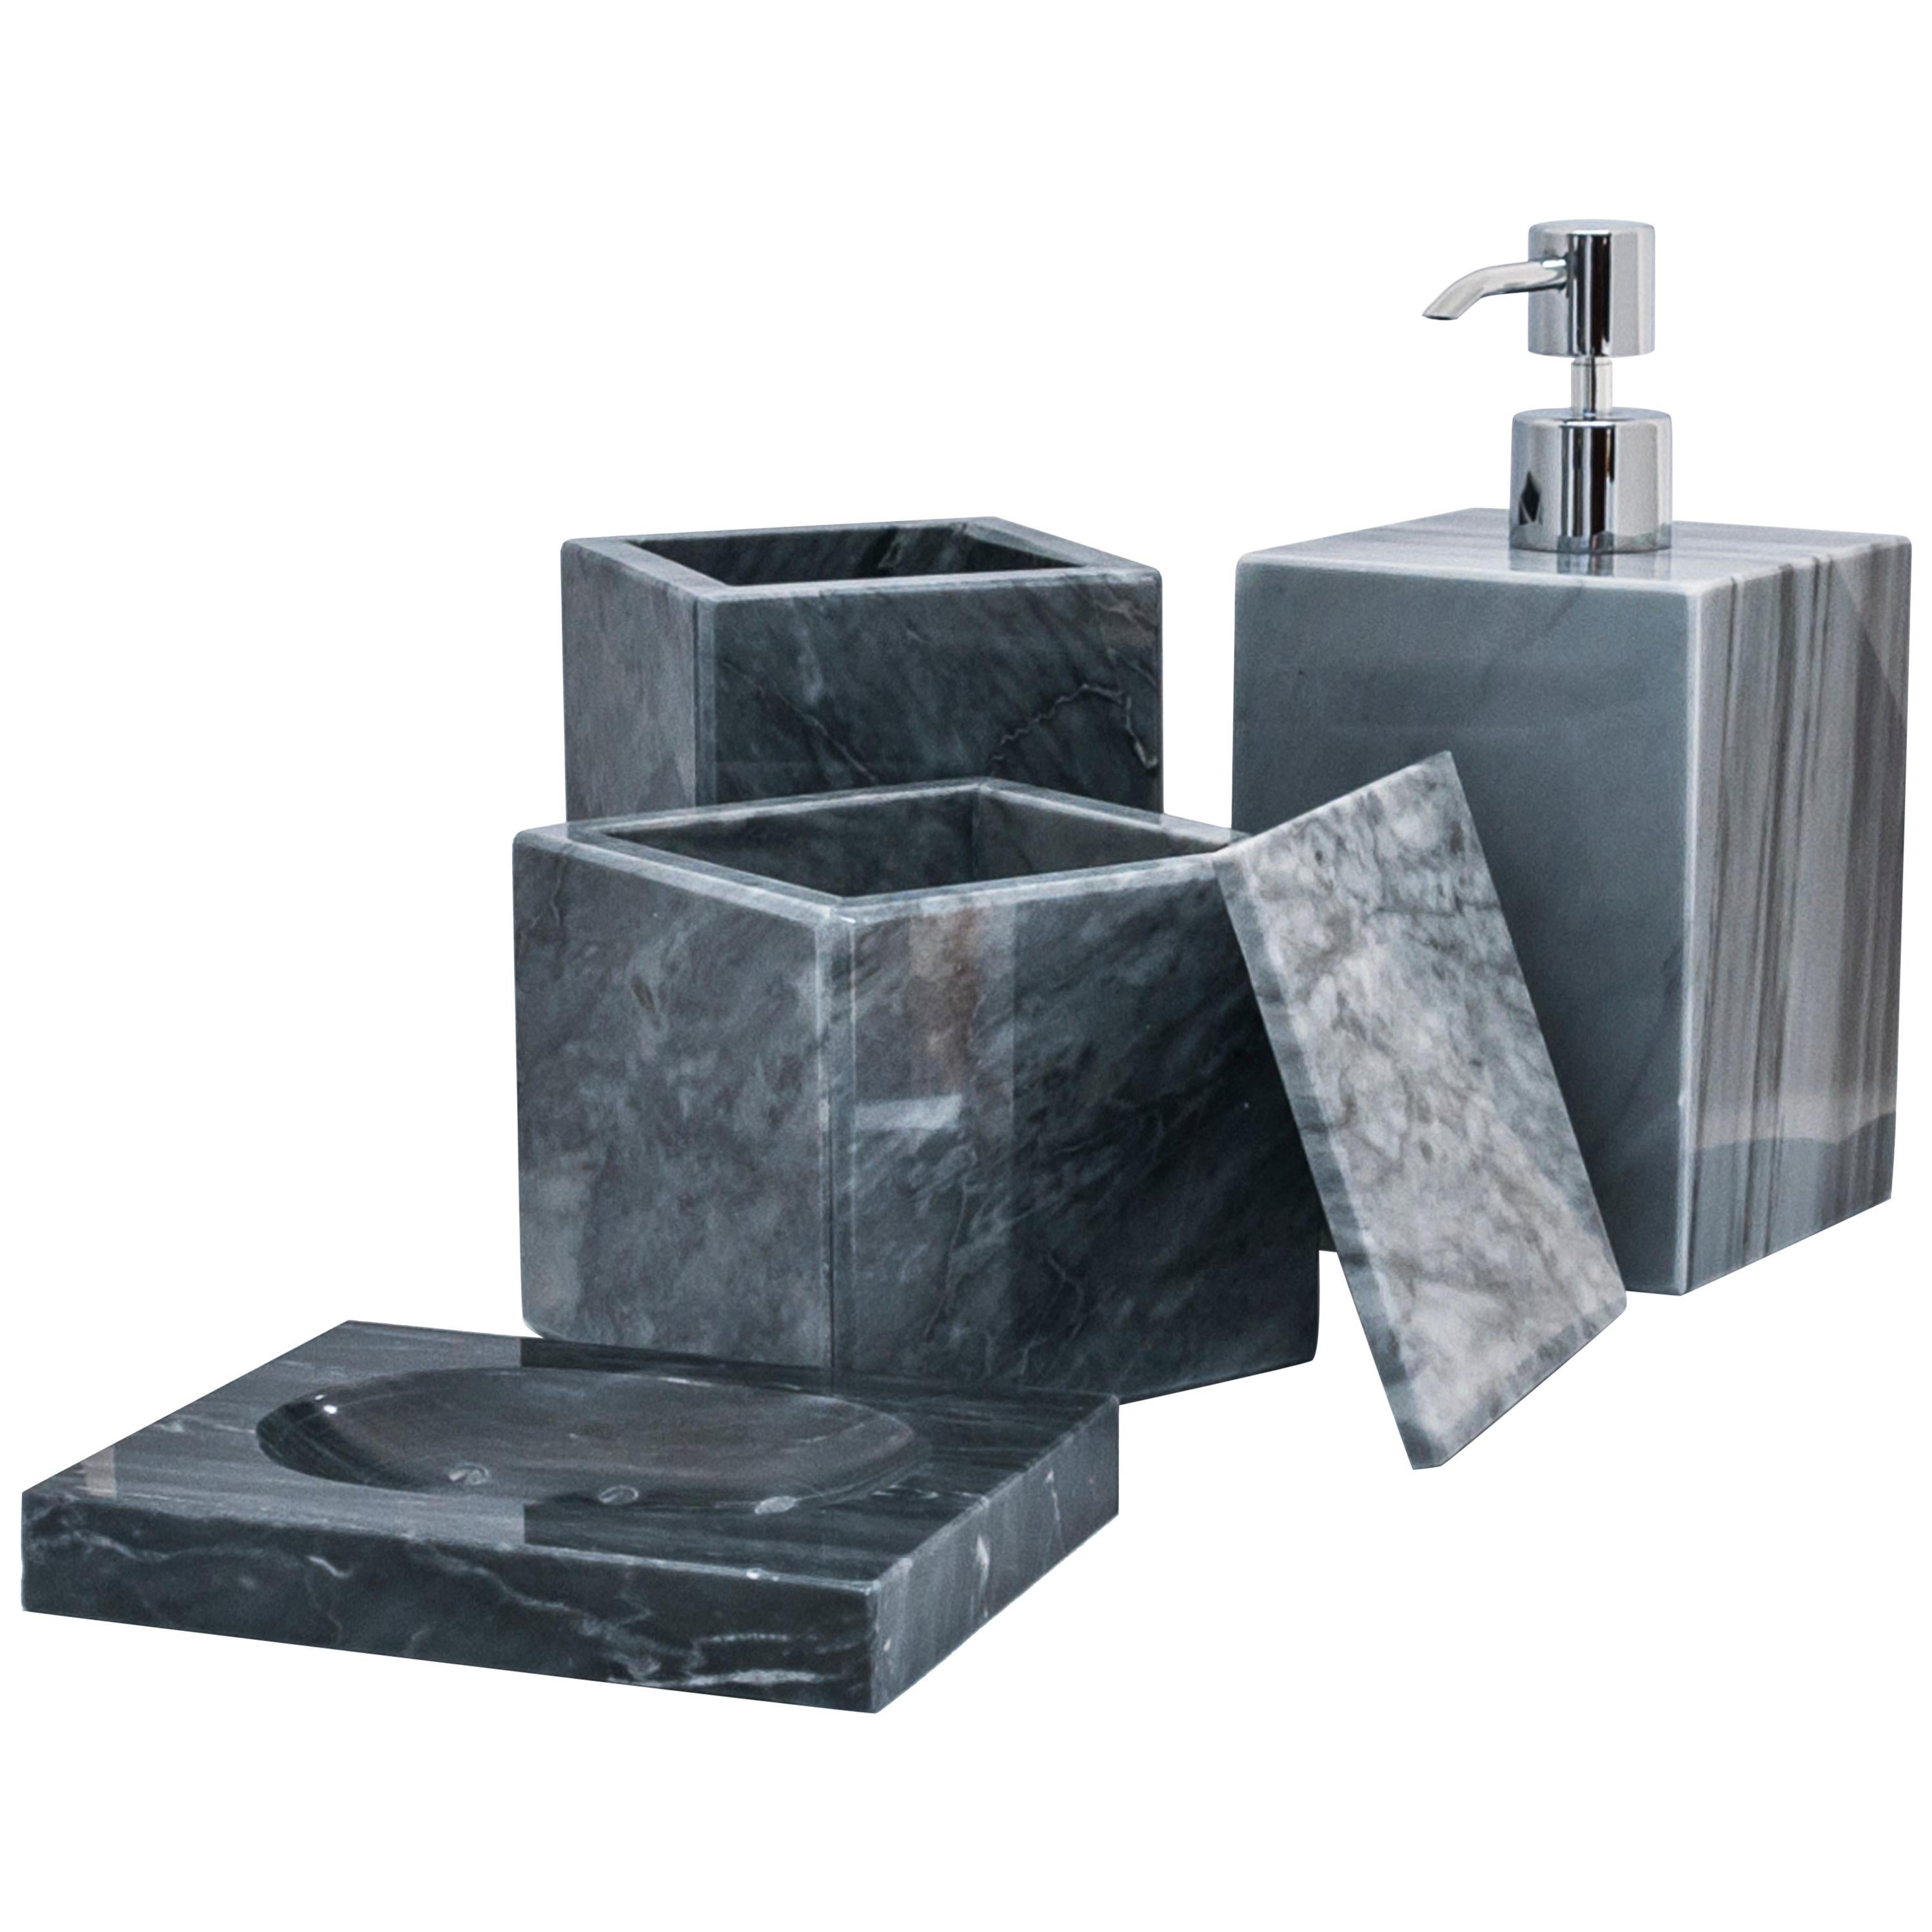 Handgefertigtes handgefertigtes quadratisches Set für Bad aus grauem Bardiglio-Marmor